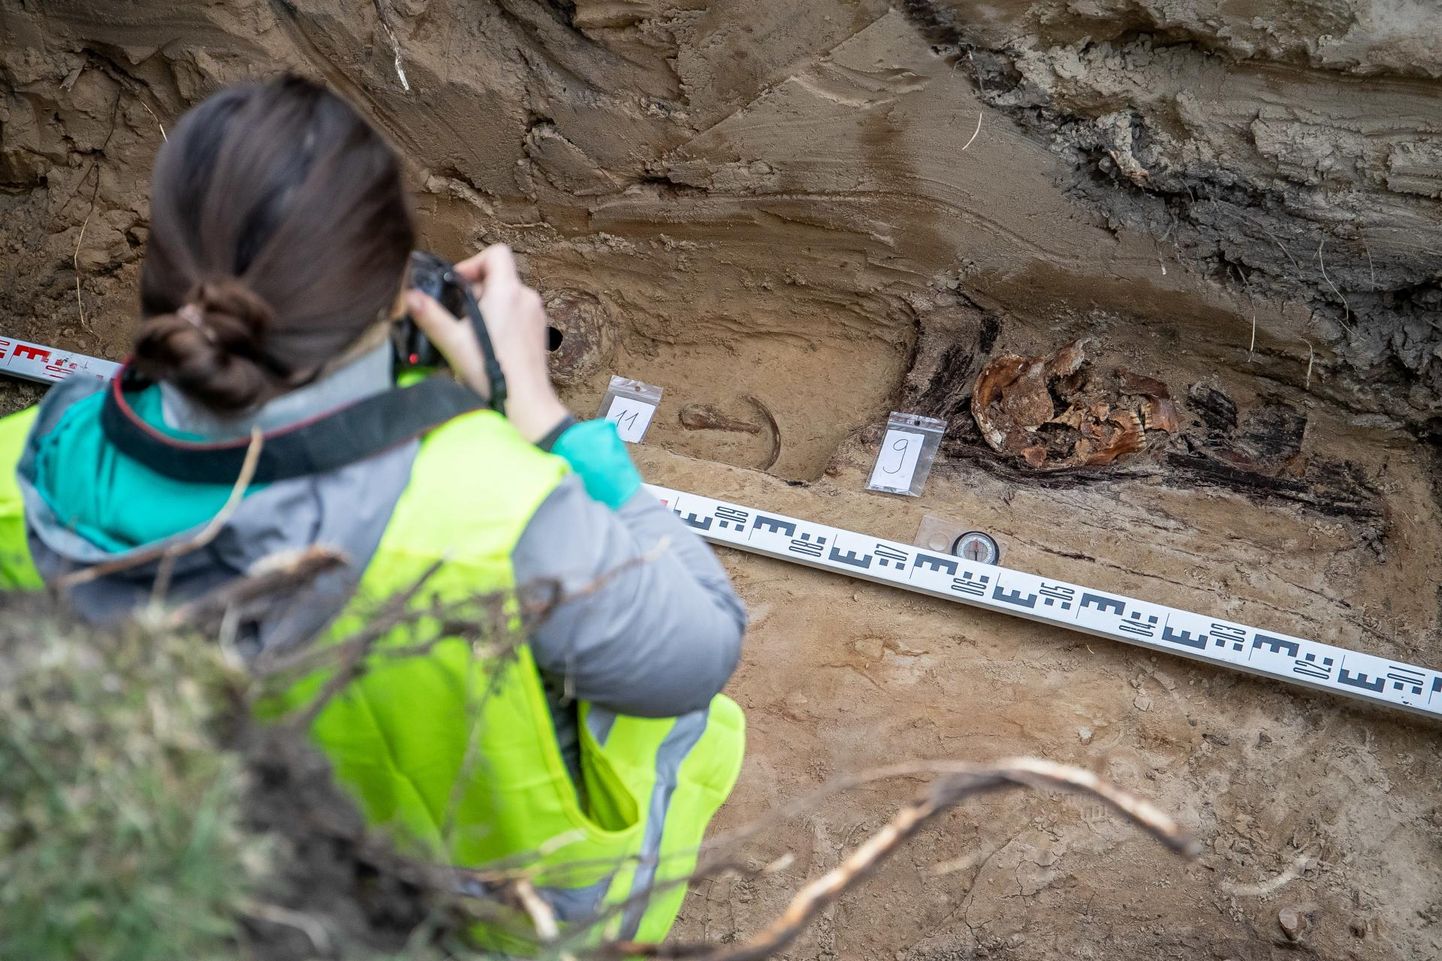 Археологи исследуют кости в узкой канаве, где позже установят теплотрассу.